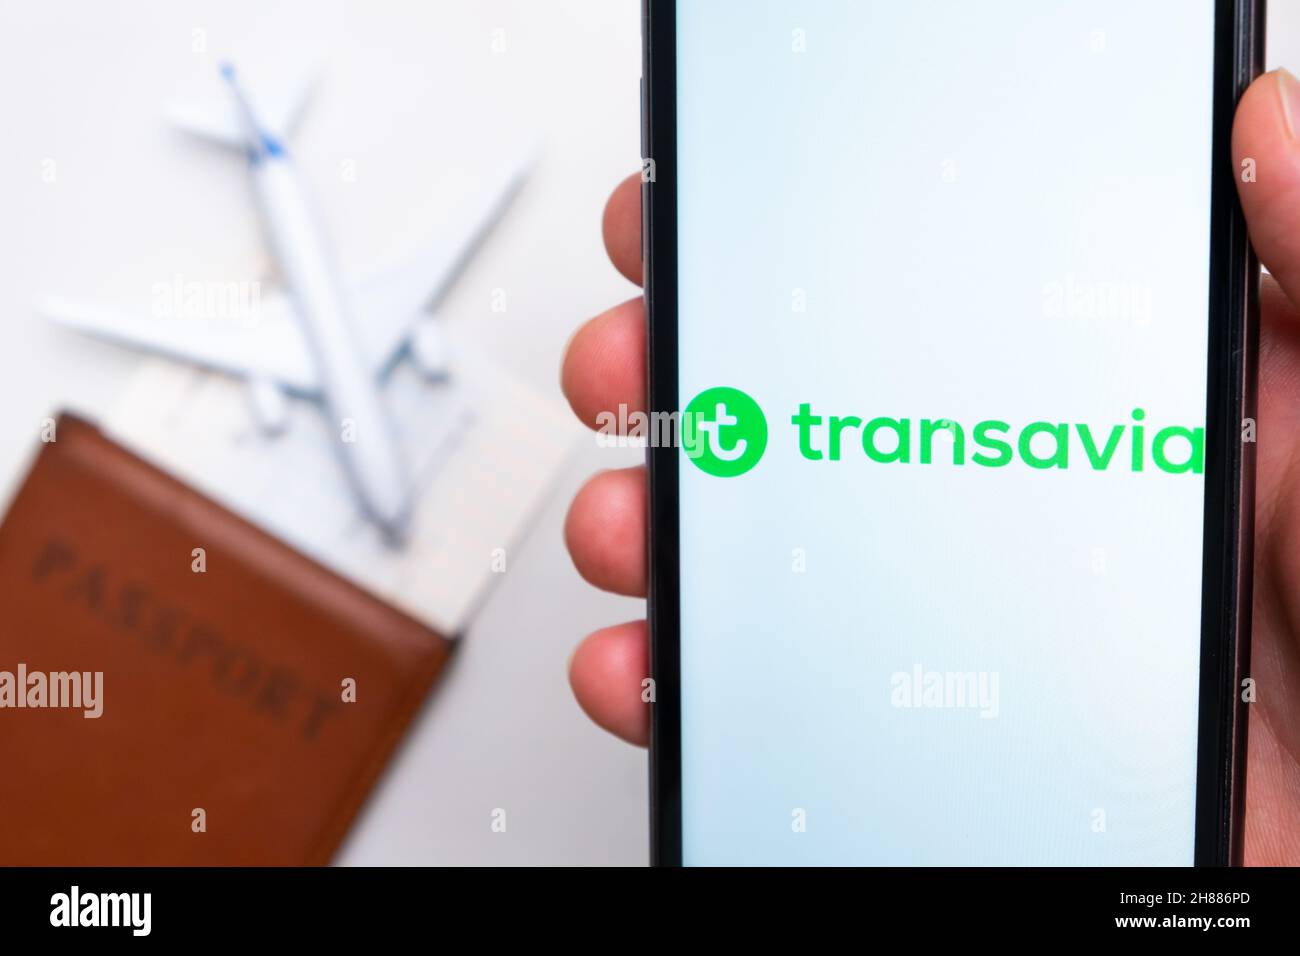 App Transavia Airline sullo schermo di uno smartphone con un aereo e un passaporto sullo sfondo. Il concetto di app di viaggio. Novembre 2021, San Francisco, USA Foto Stock